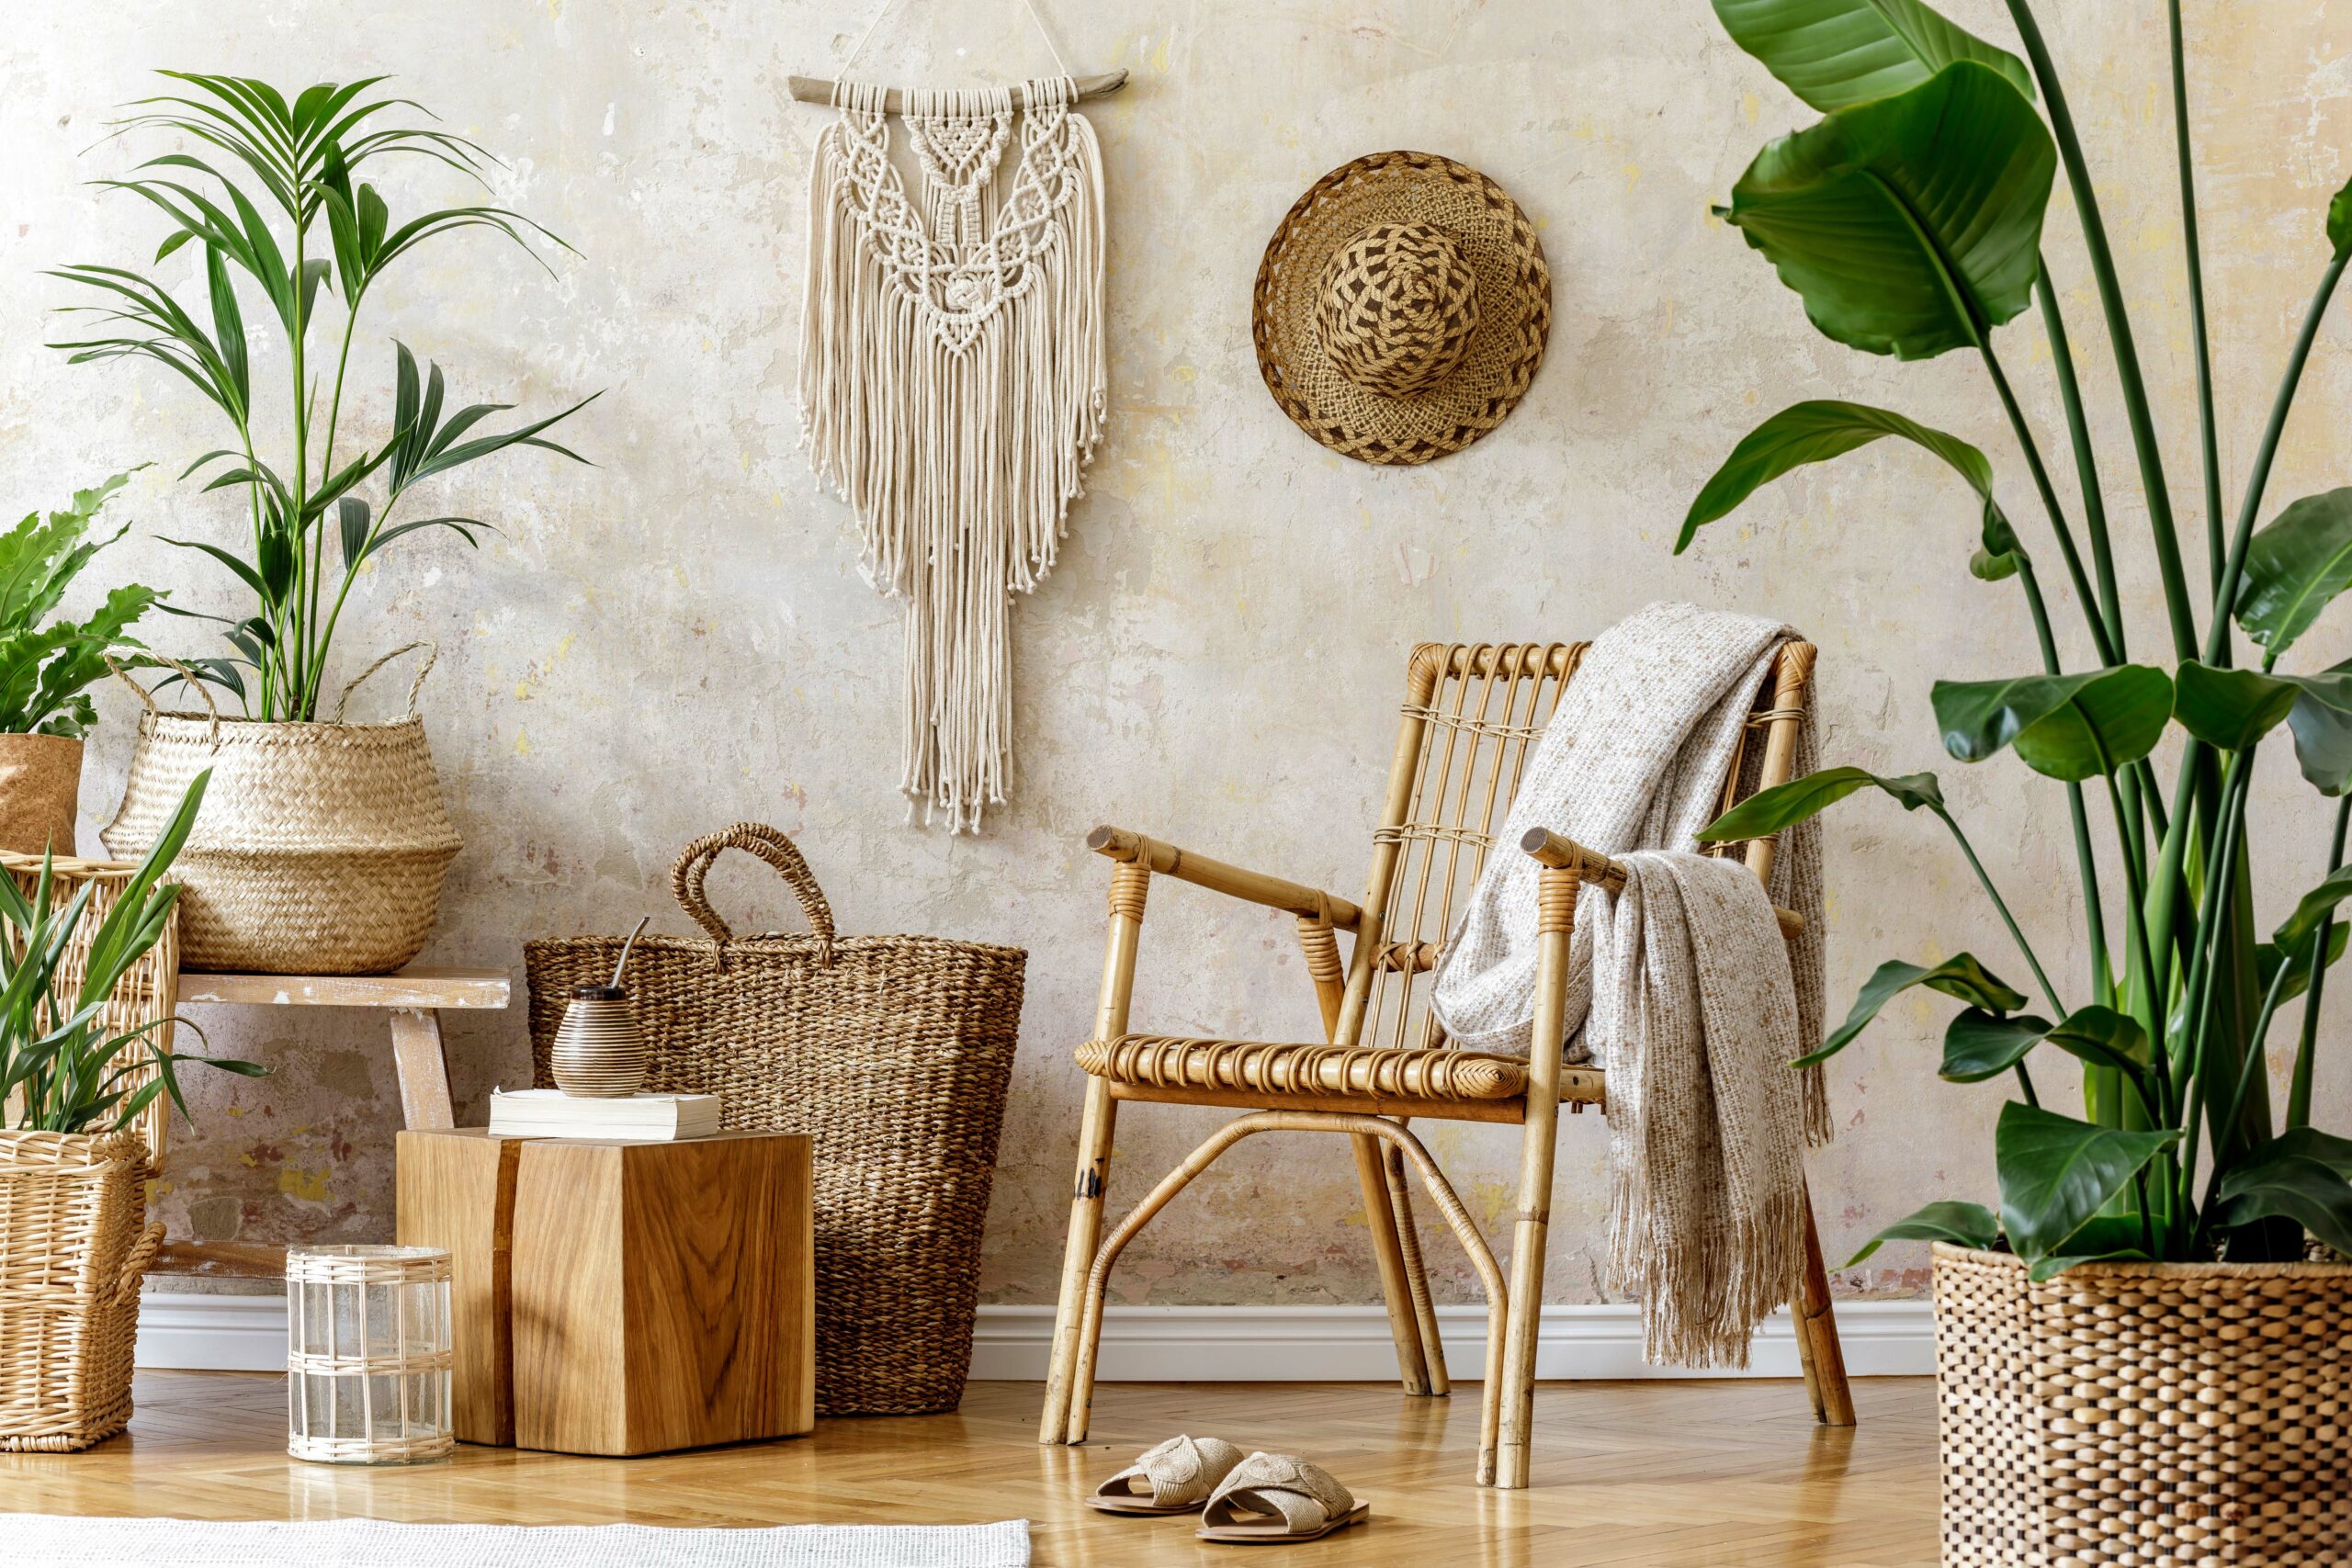 Tendencias decoración: Muebles de fibras naturales para decorar tu